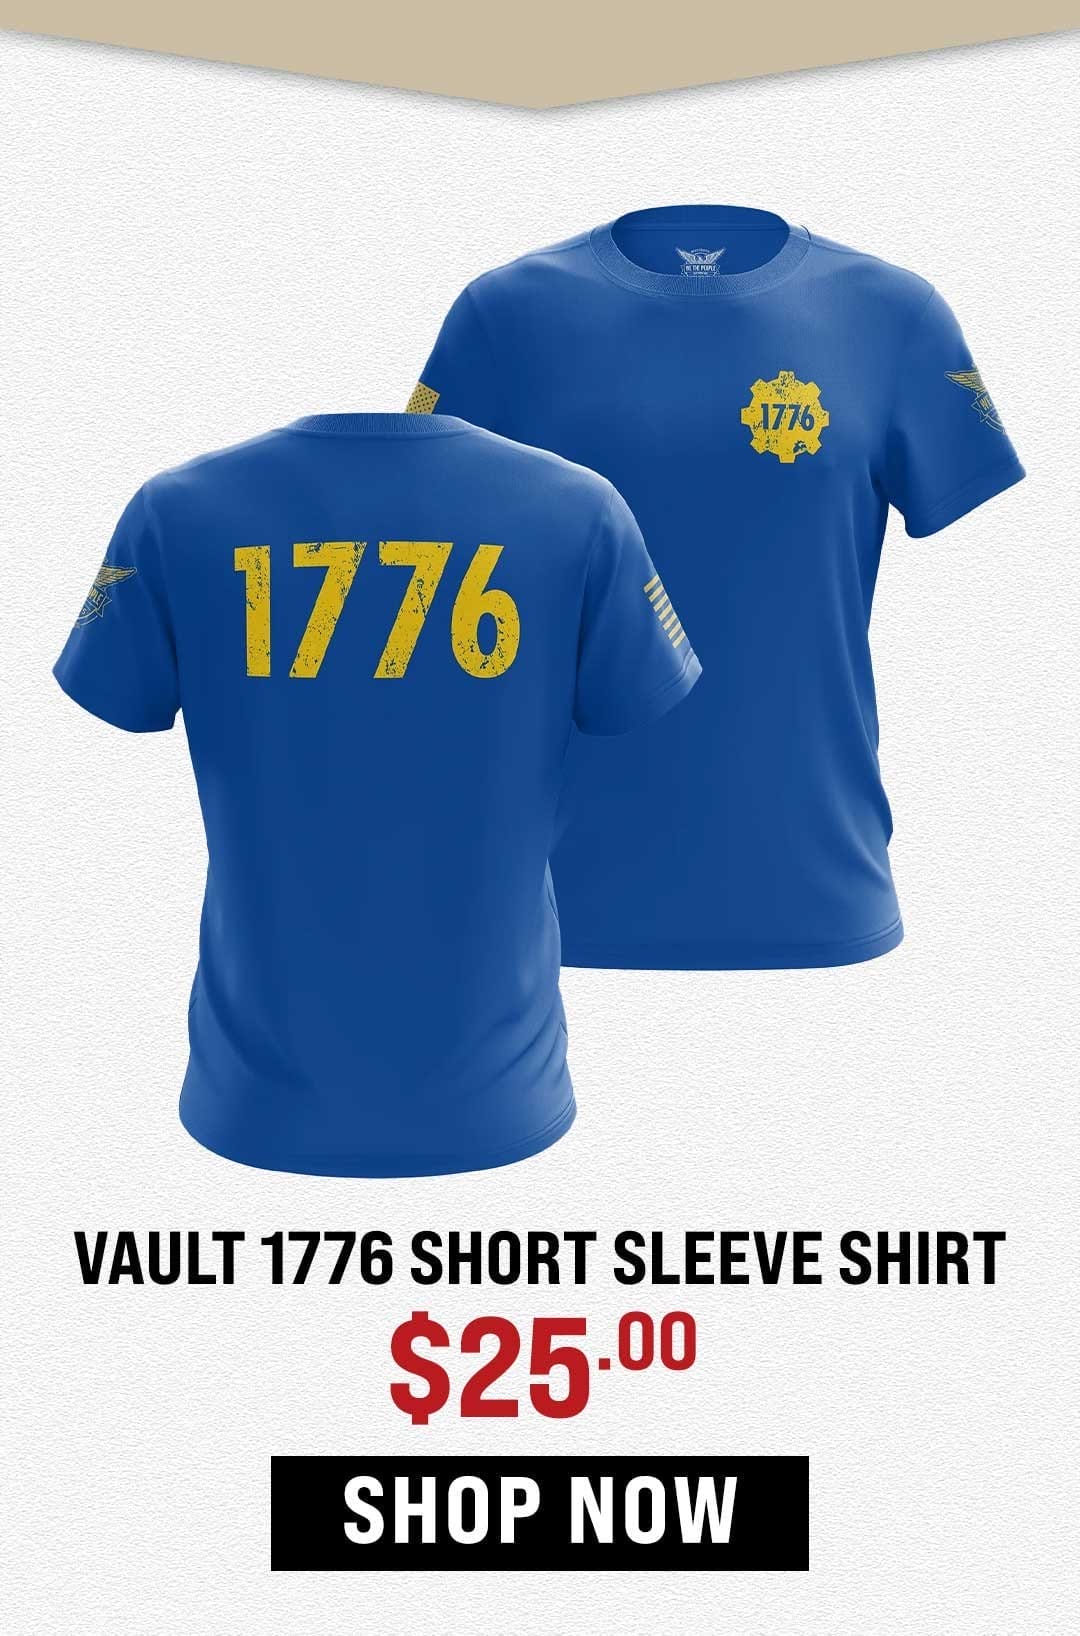 Vault 1776 Shirt